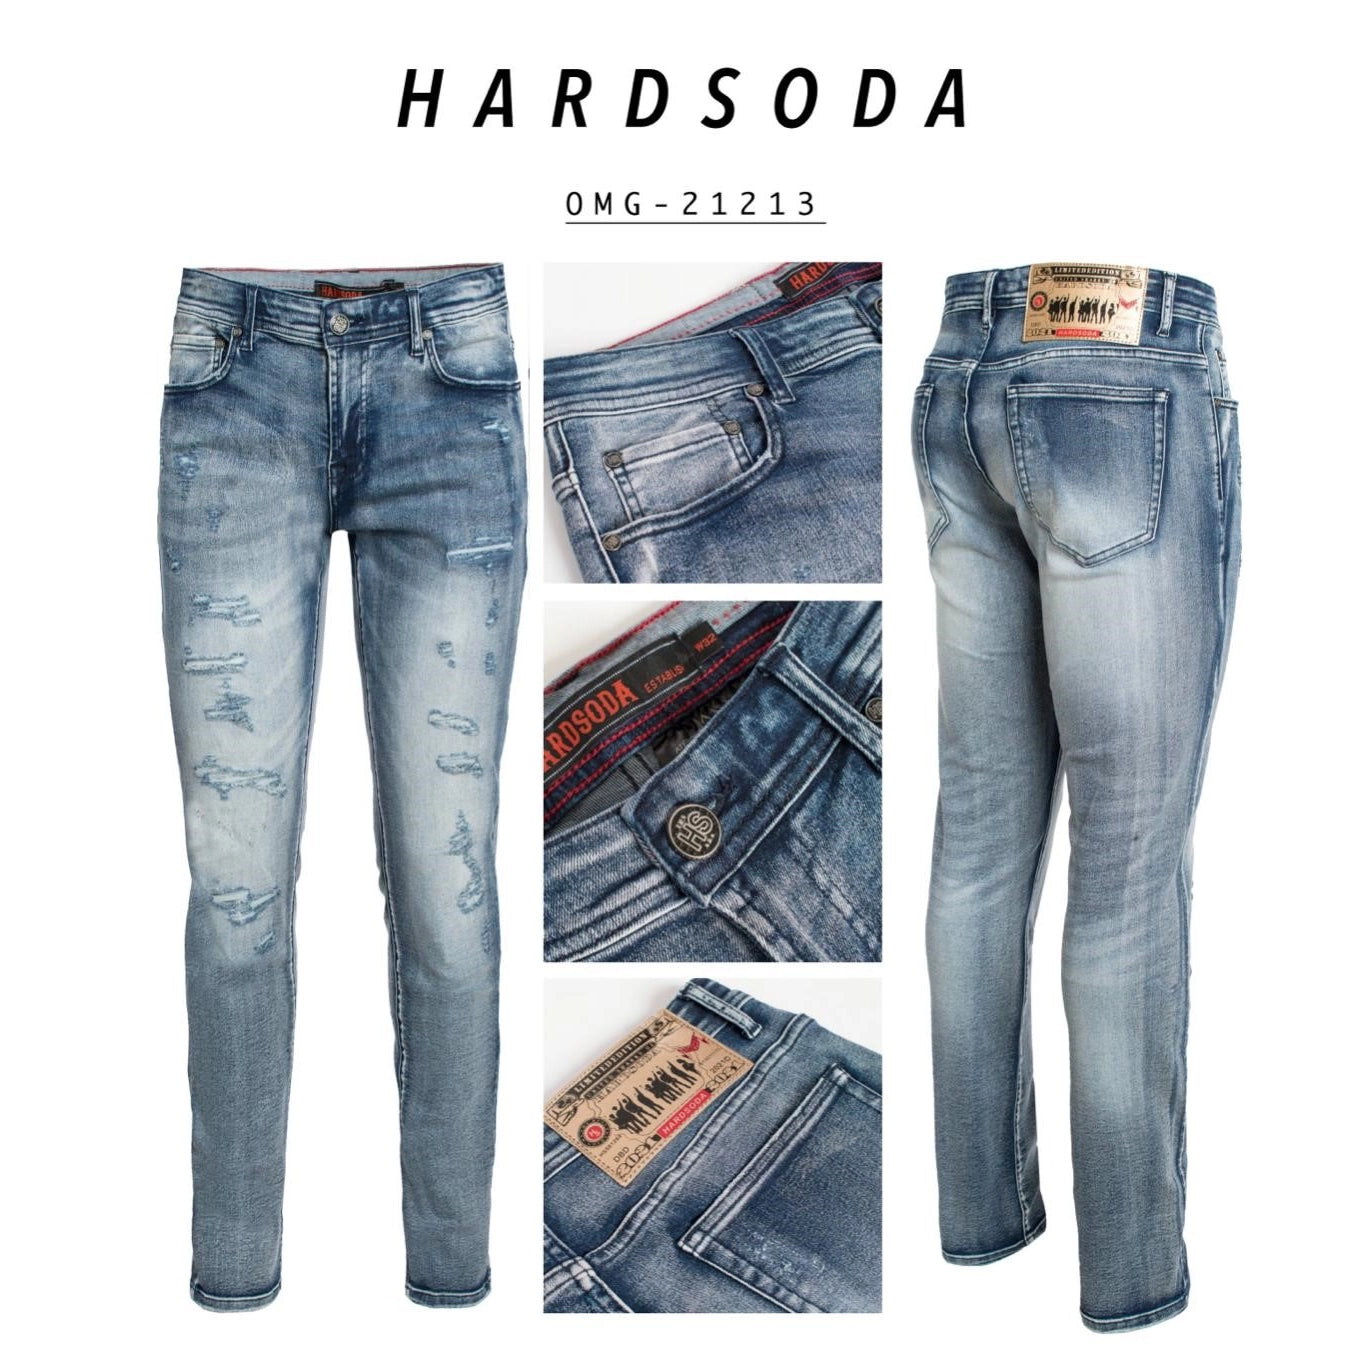 Hard Soda - Lt. Blue Rip/Repairs Stretch Jeans